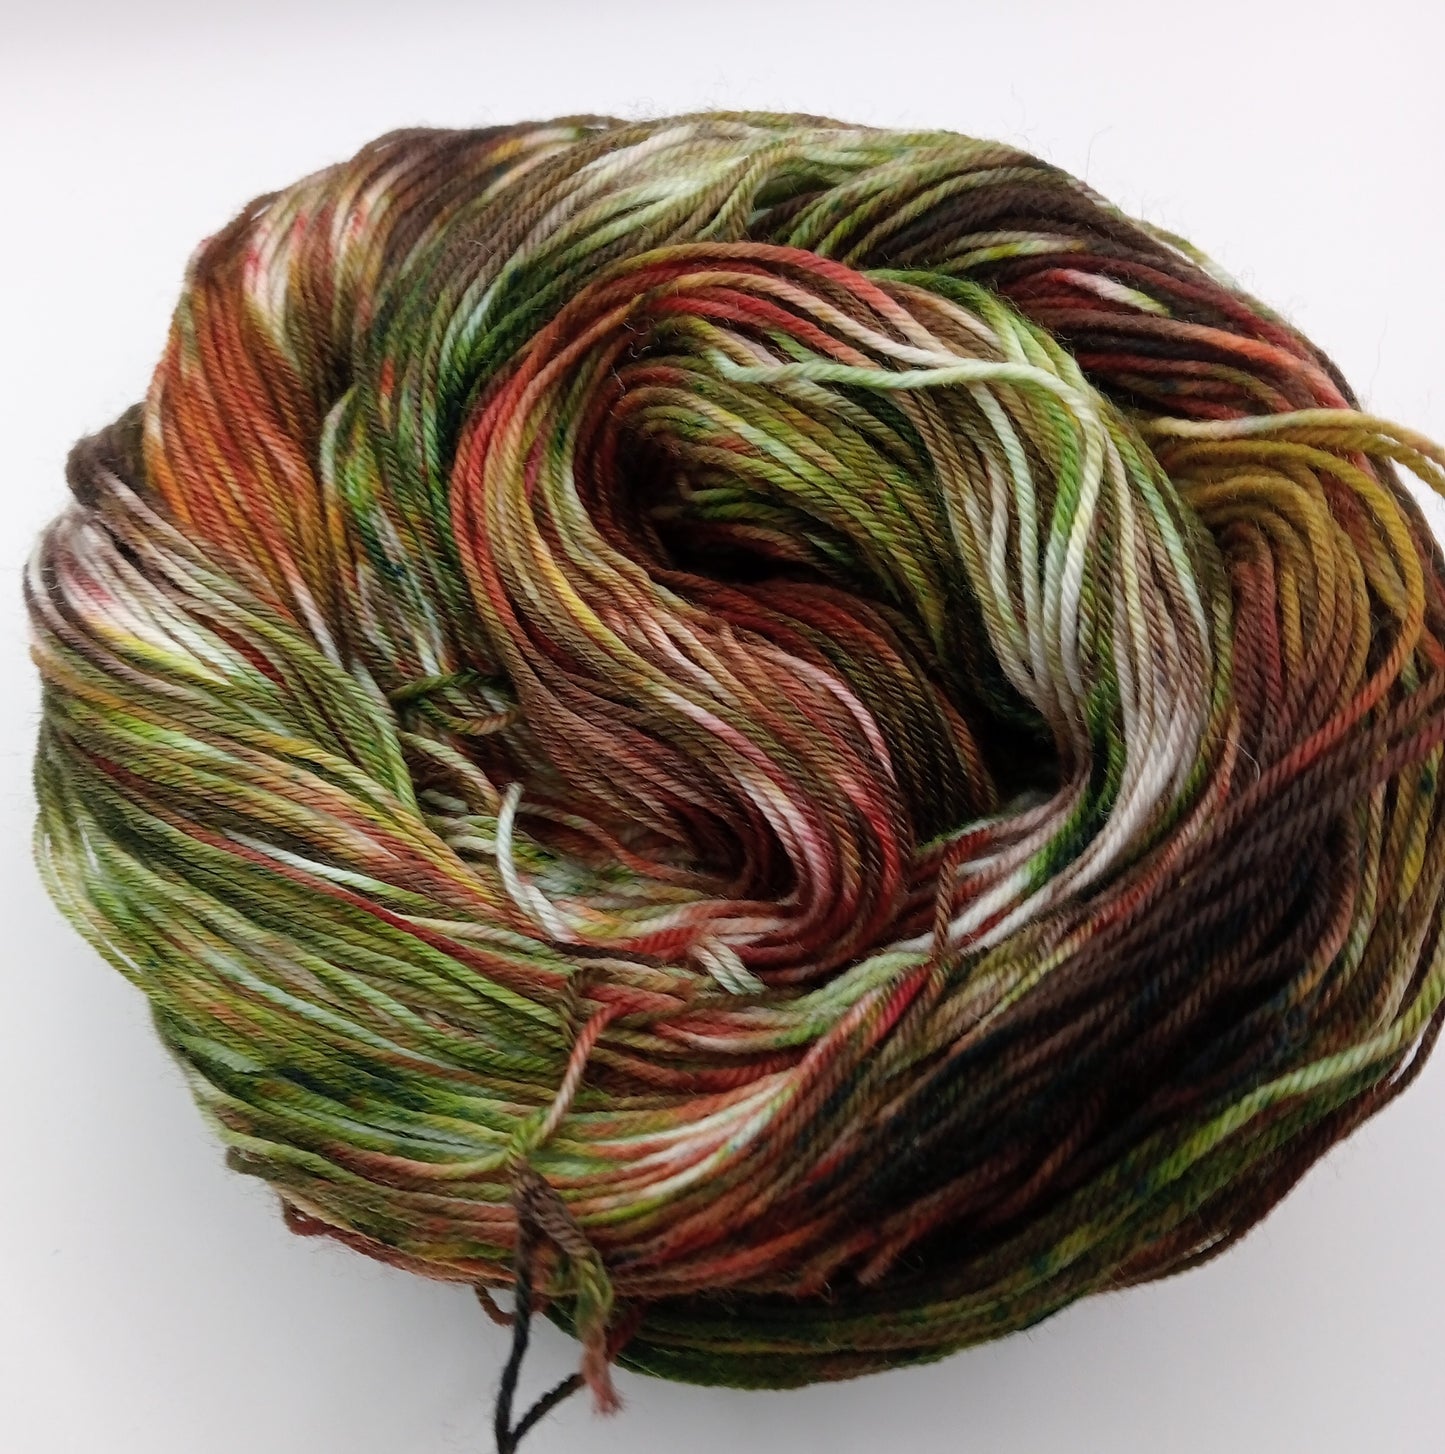 100G hand dyed Merino/Nylon luxury sock yarn - "Rustic Retreat"